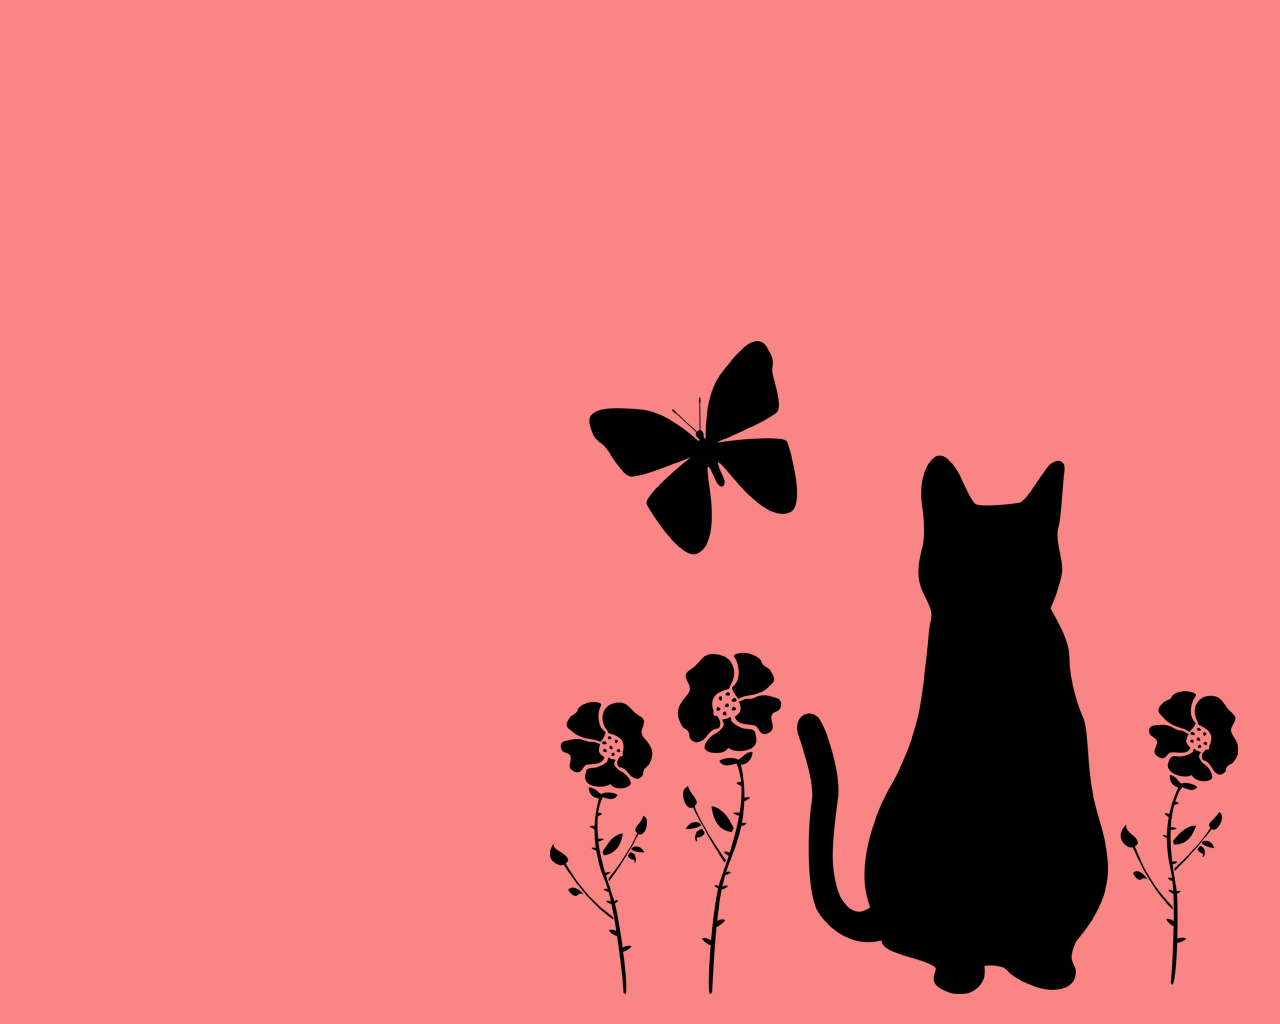 猫壁紙 猫と蝶と花と 黒シルエット1280 1024 商用利用可 無料